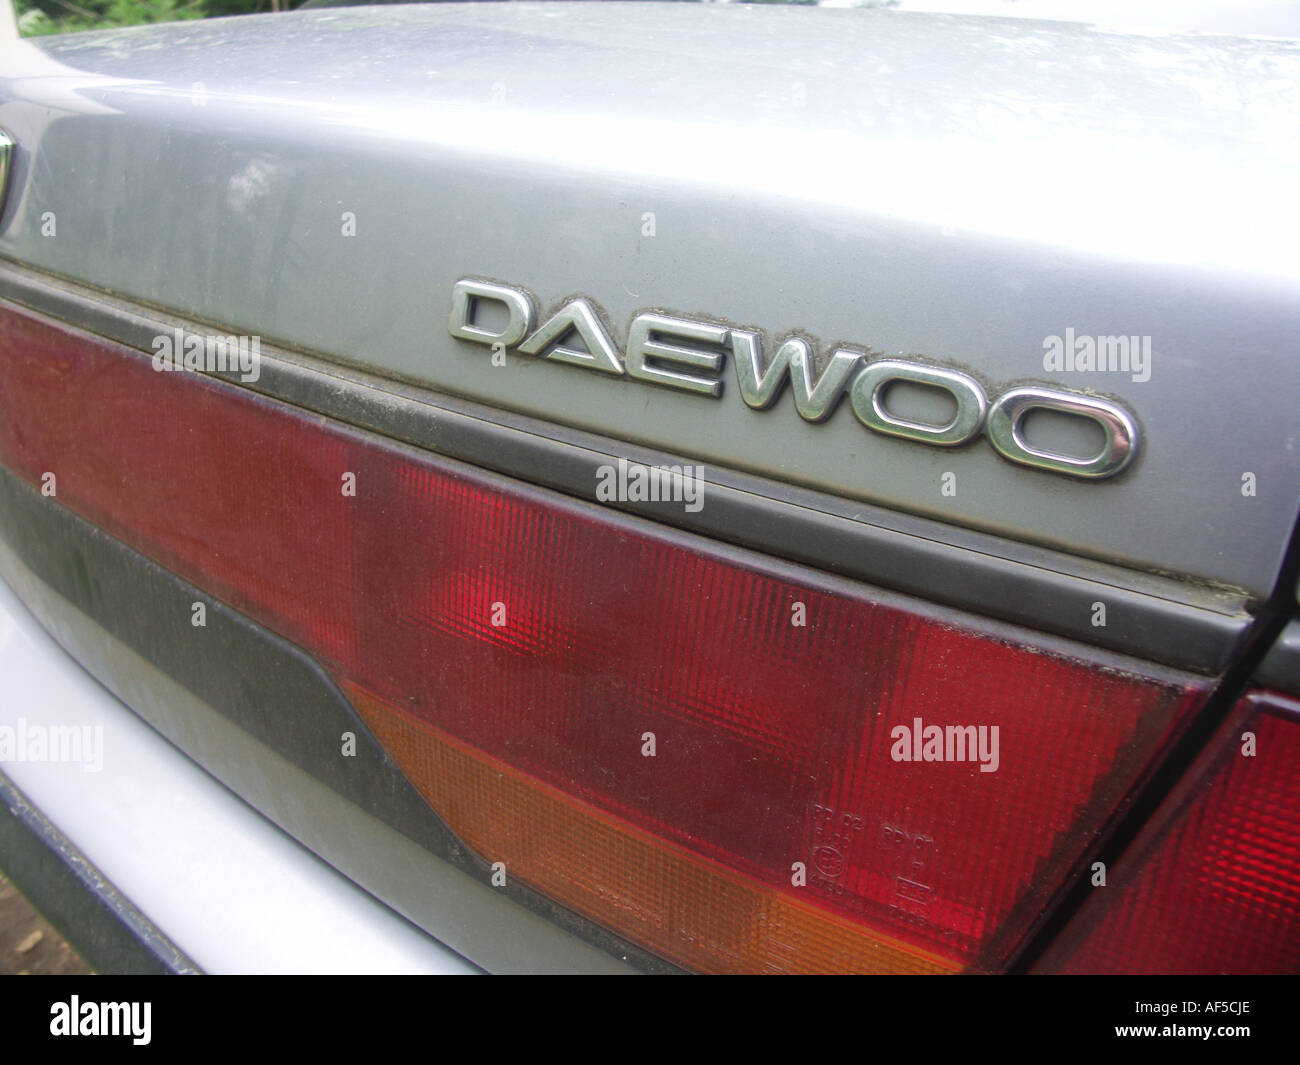 Daewoo car badge logo close up on car boot Stock Photo - Alamy